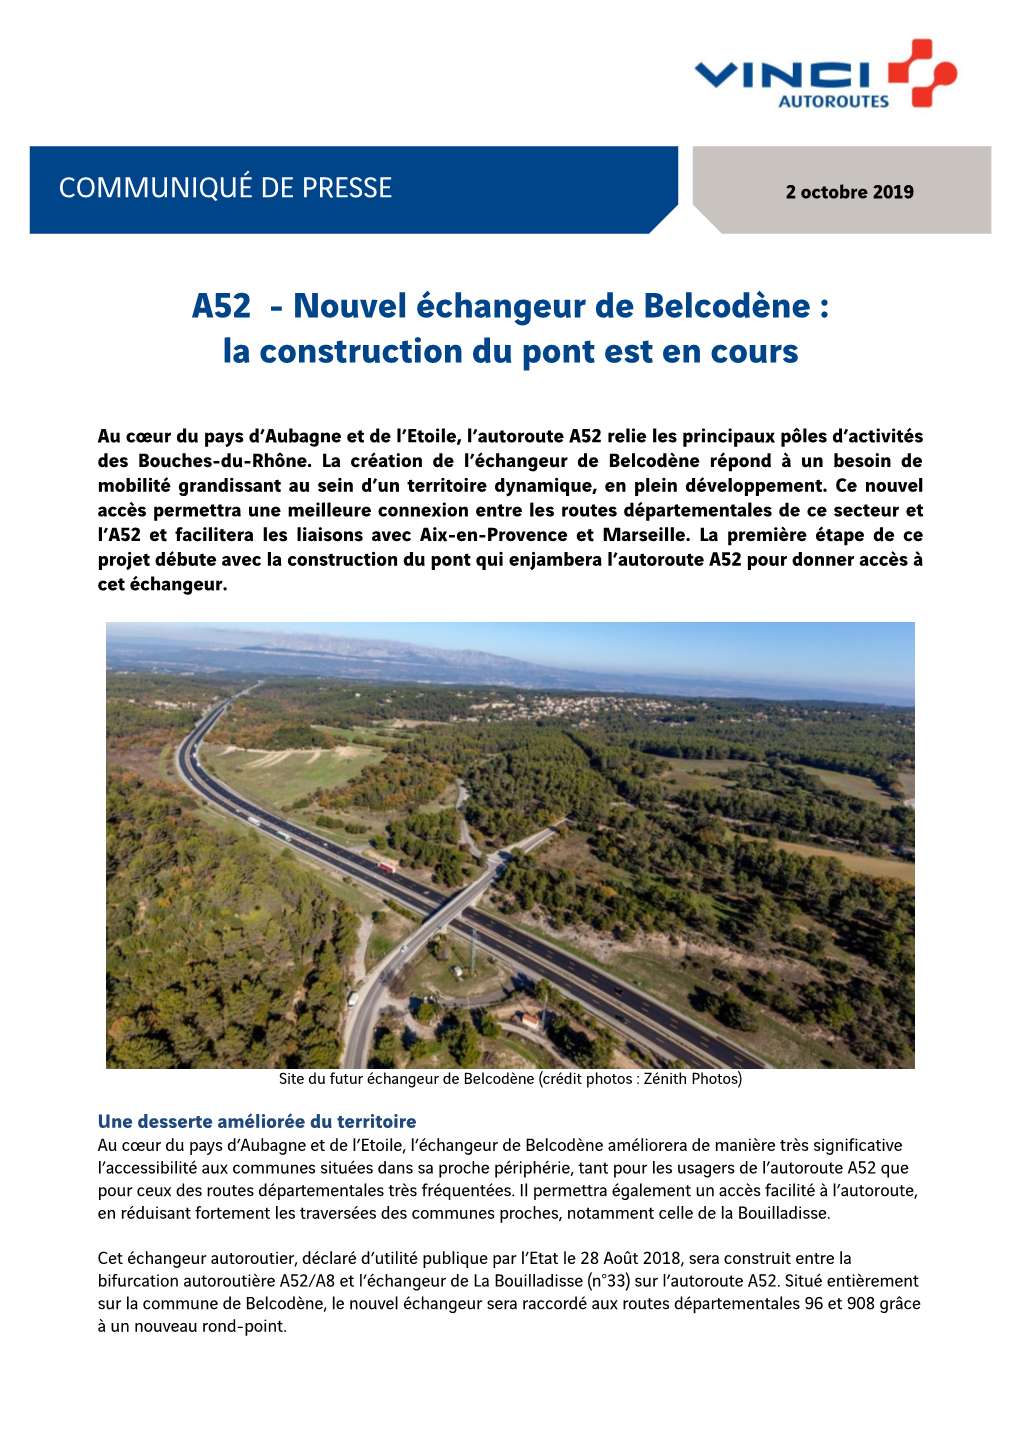 A52 - Nouvel Échangeur De Belcodène : La Construction Du Pont Est En Cours